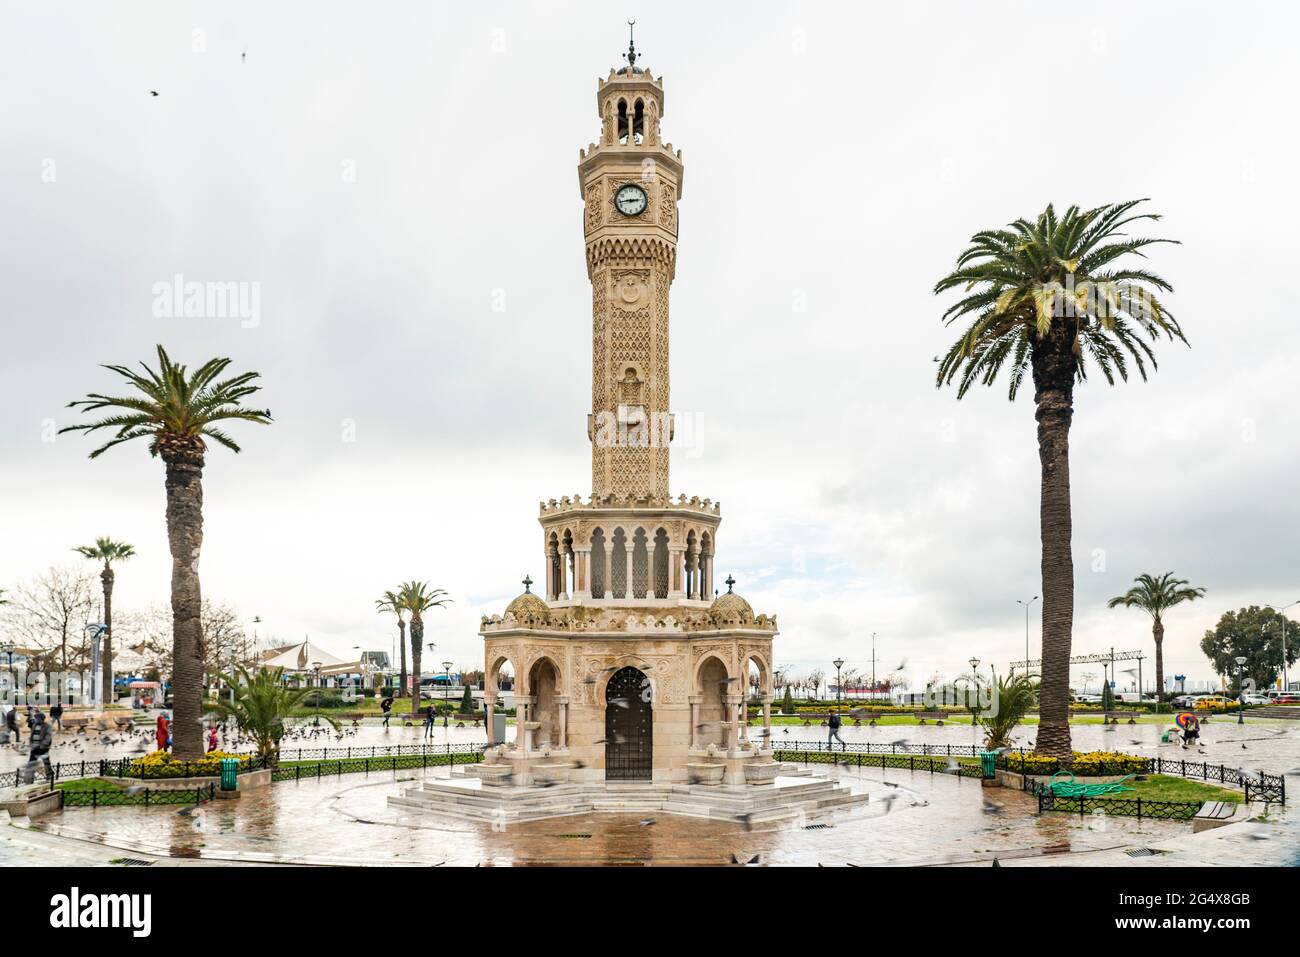 Izmir Uhrturm mit Palmen am Konak Platz im Winter, Izmir, Türkei Stockfoto